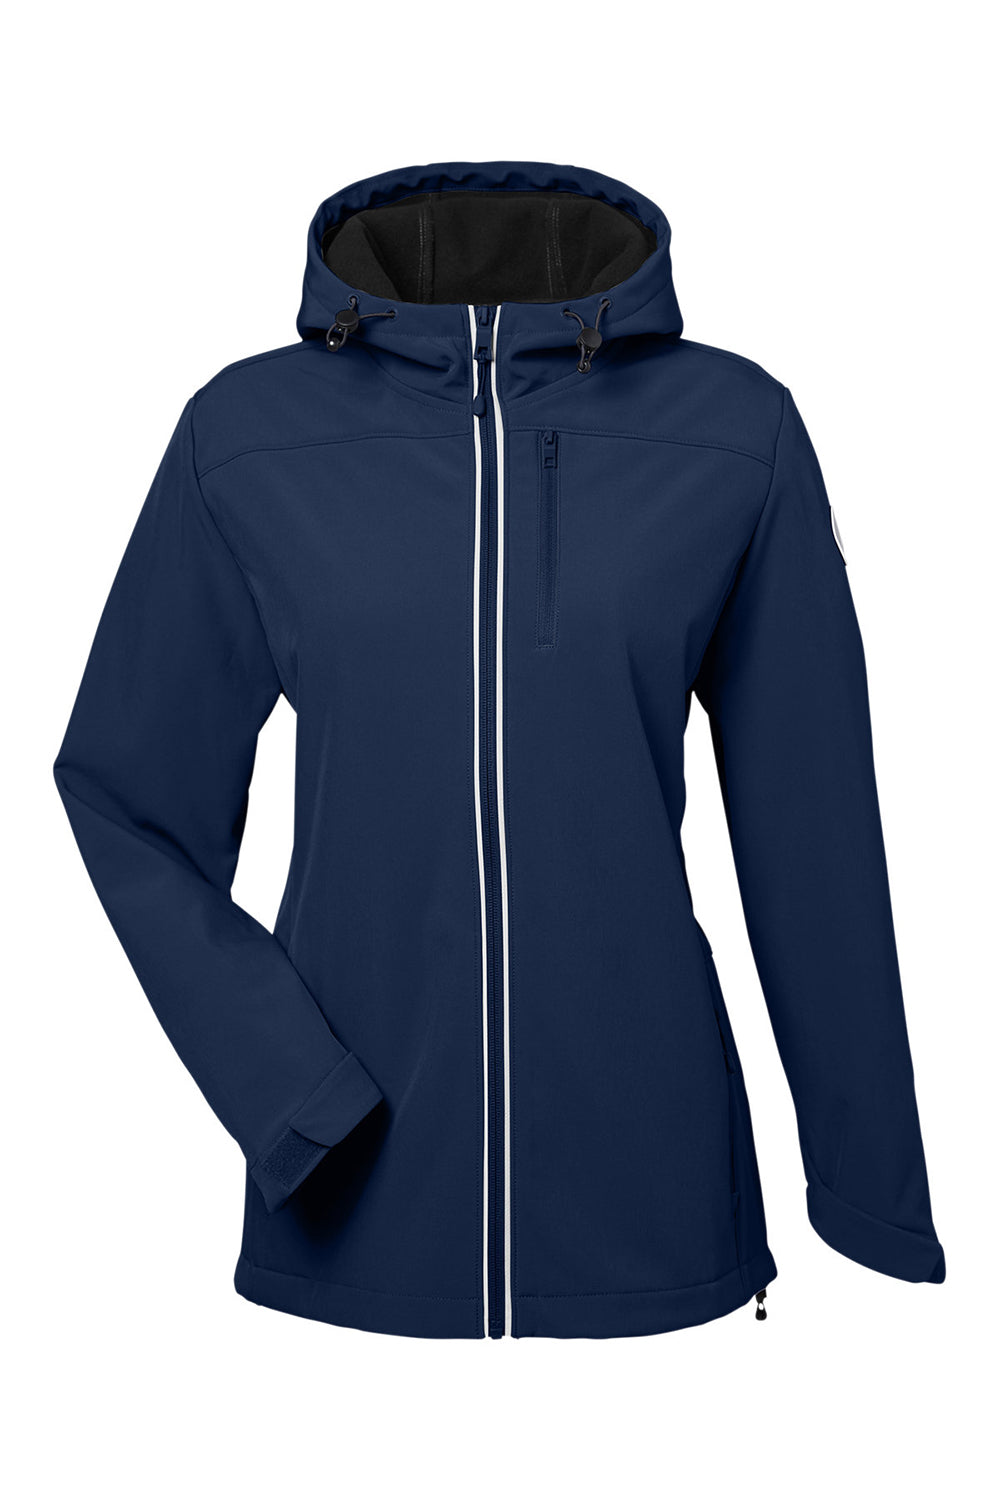 Nautica N17790 Womens Wavestorm Full Zip Hooded Jacket Navy Blue Flat Front